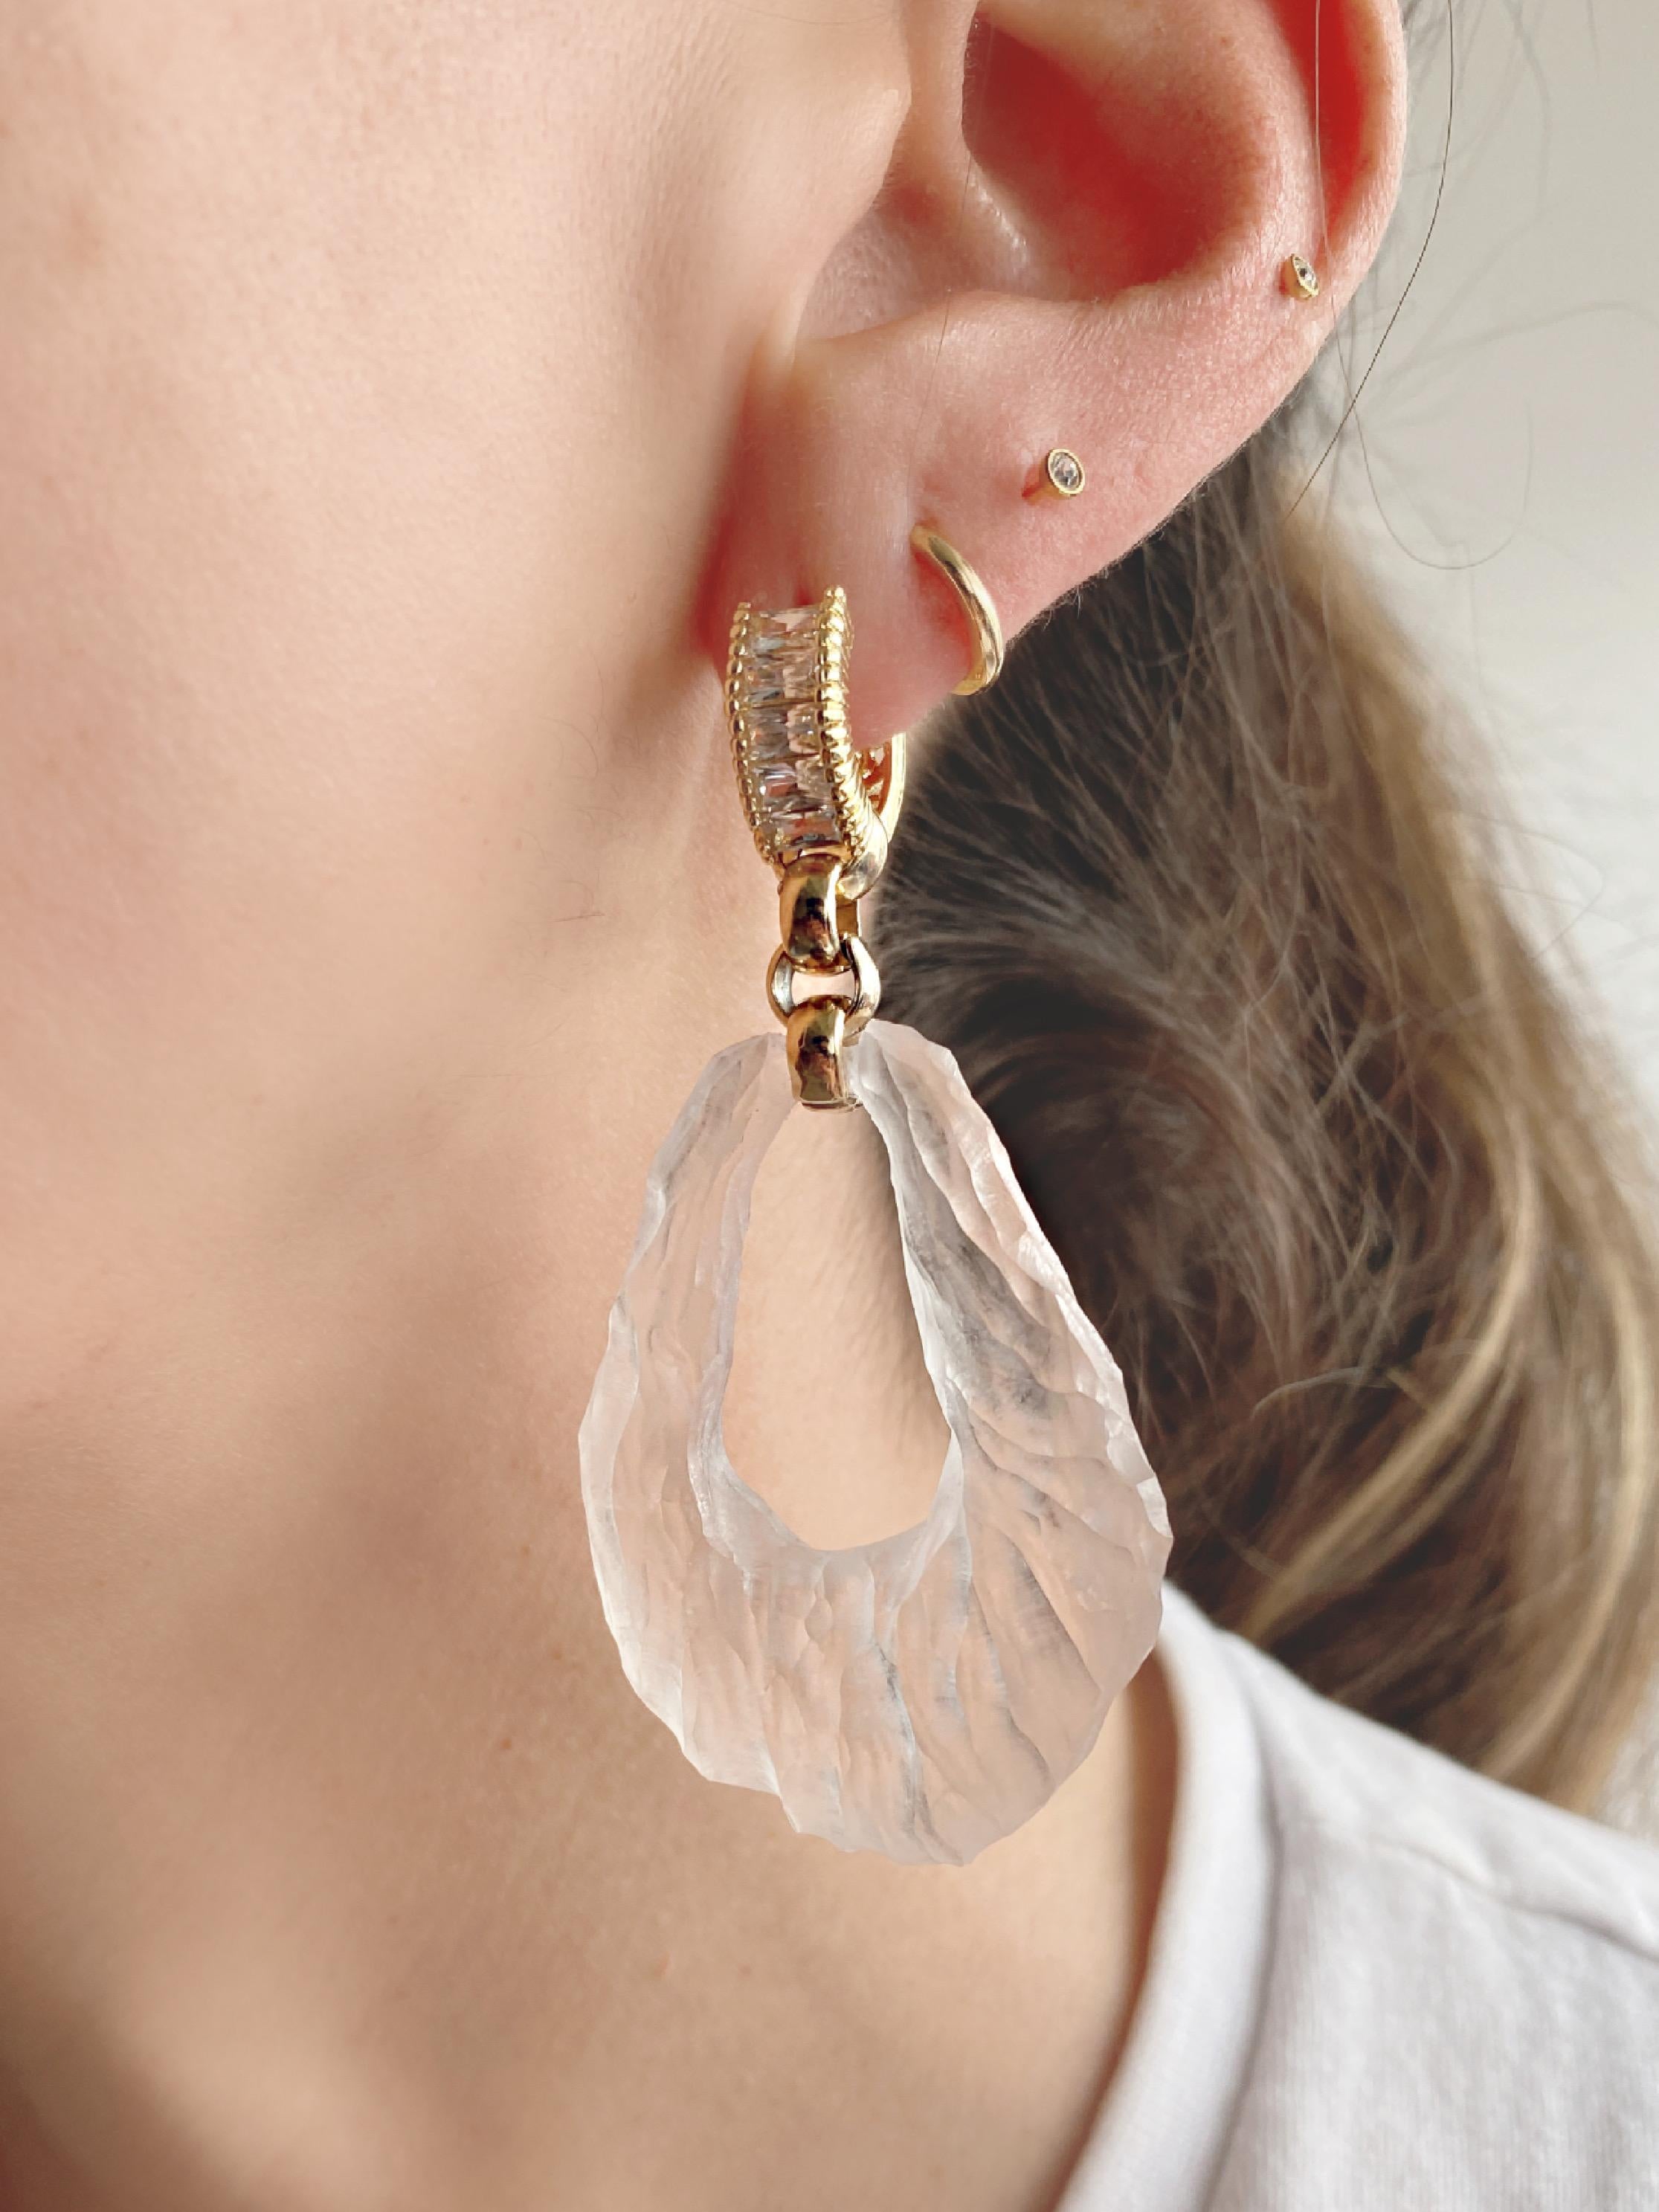 aetheryte earrings